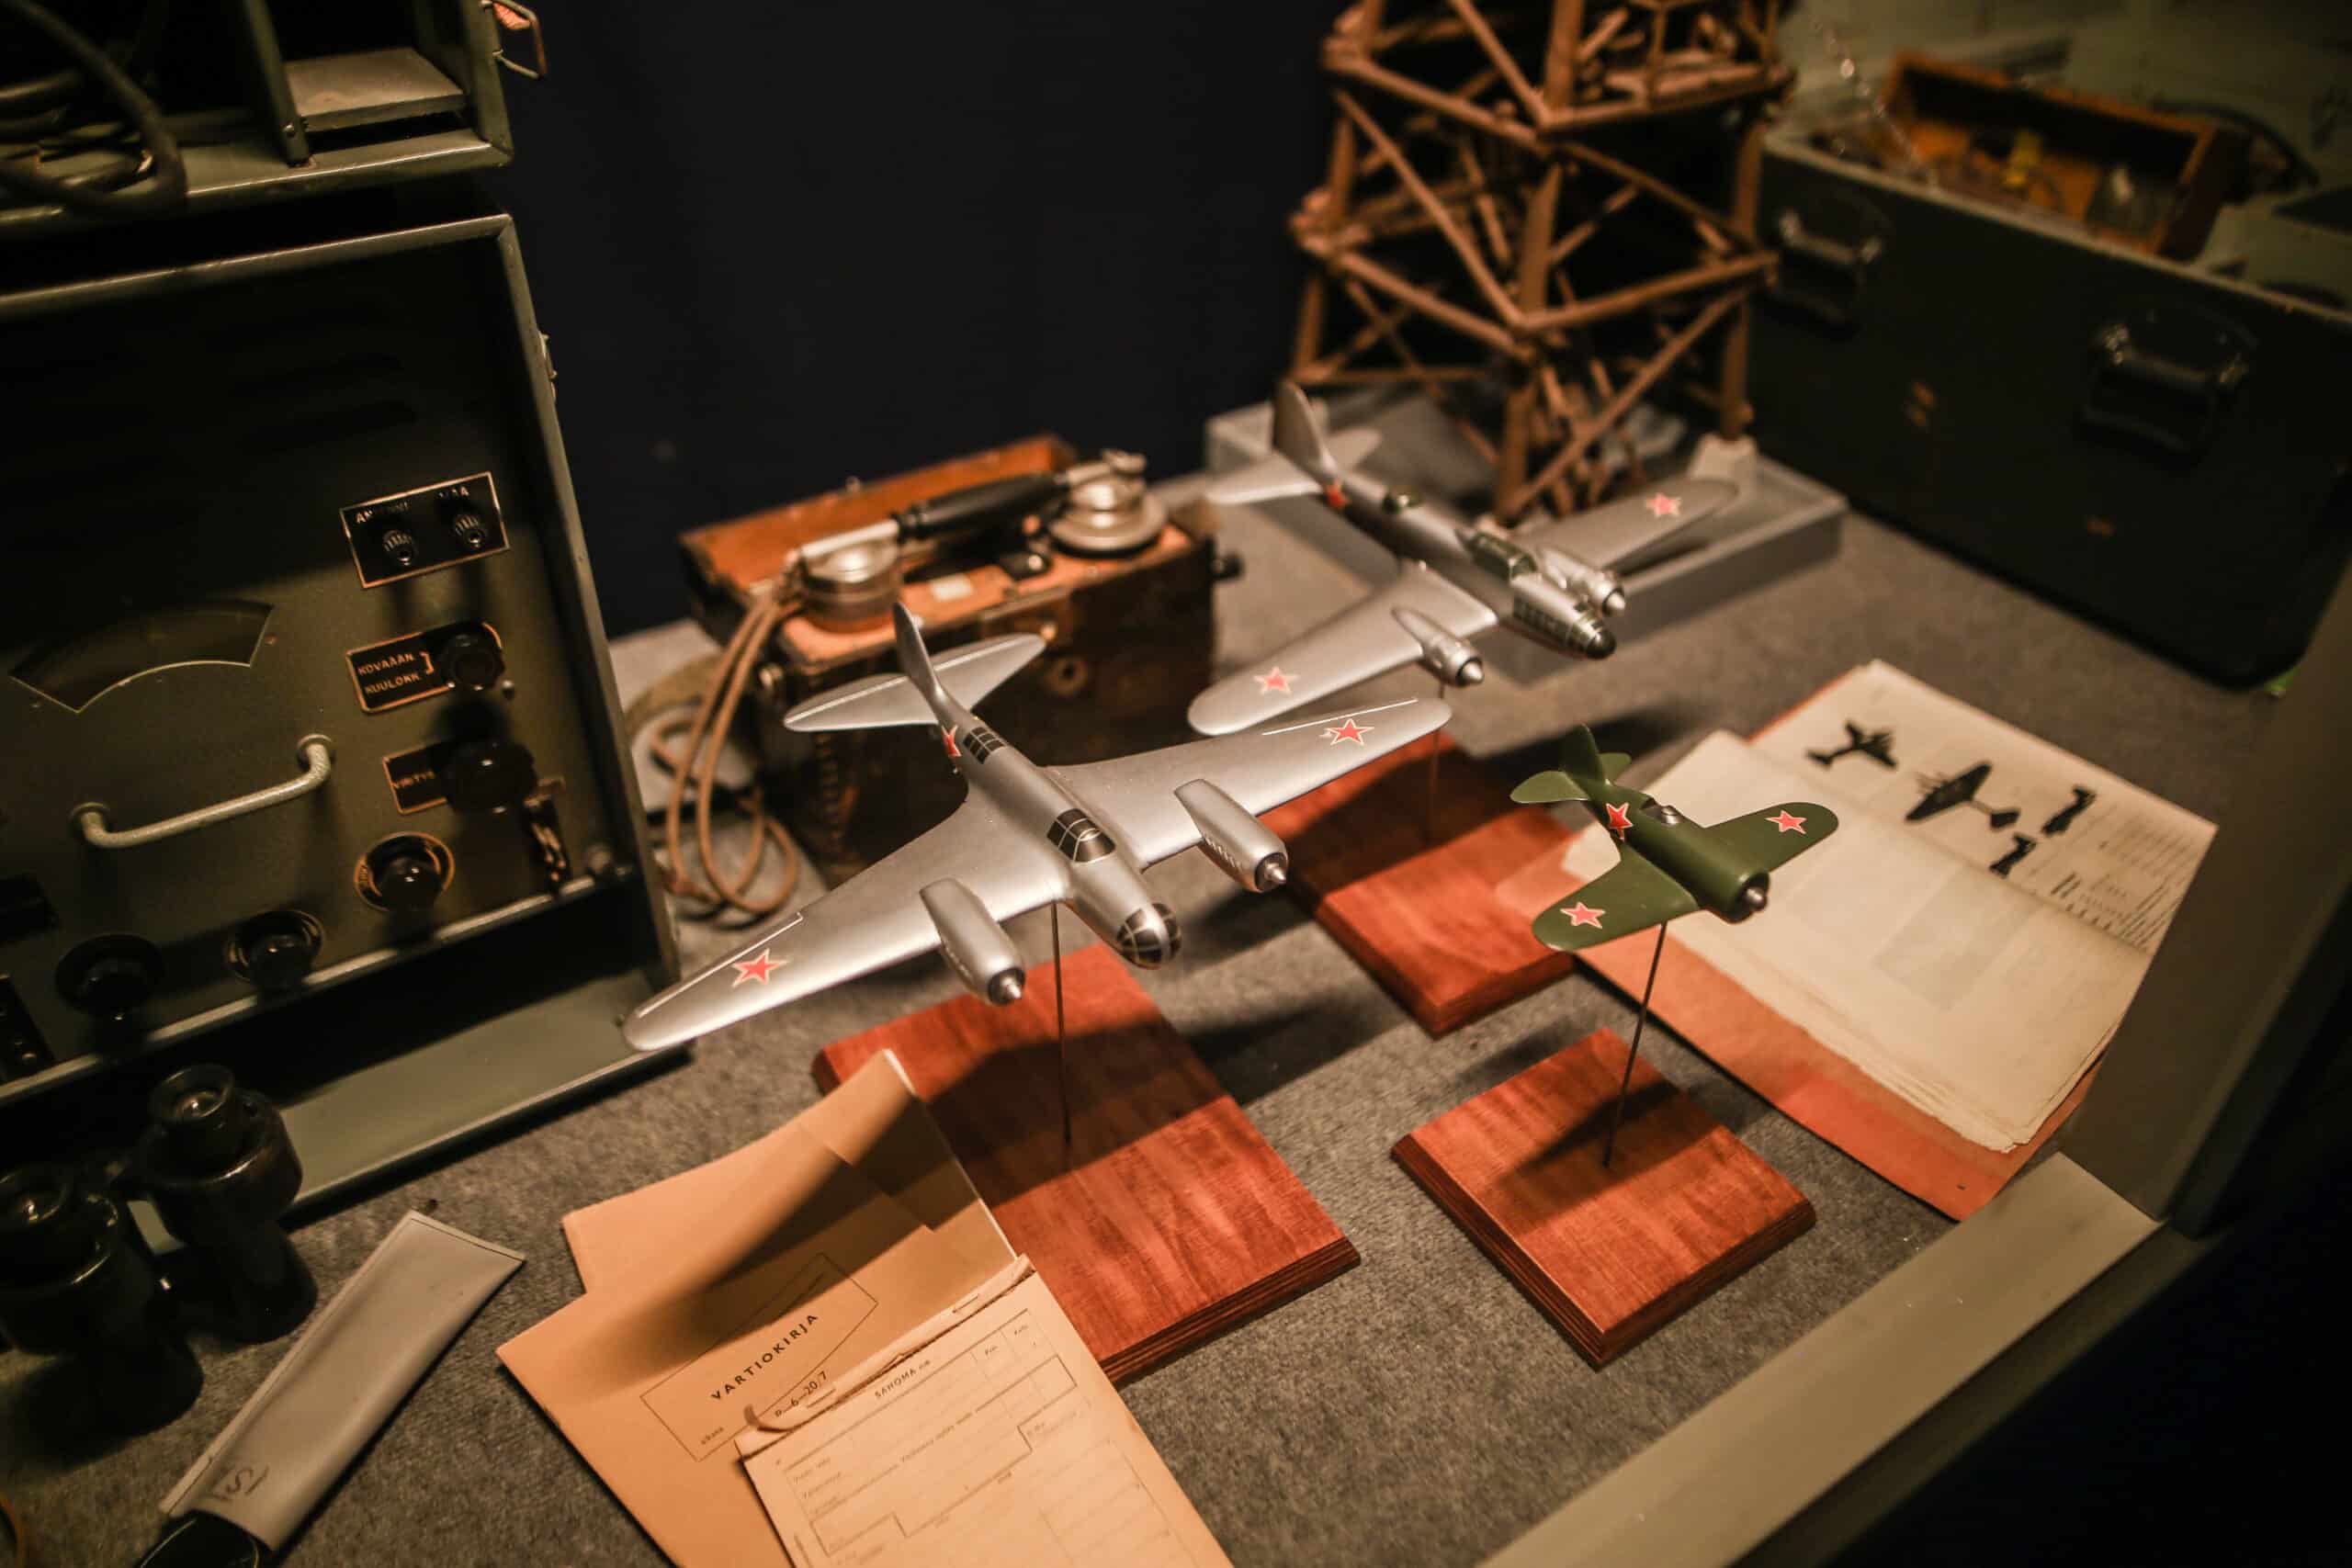 Kuva vitriinistä viestinäyttelyssä. Viholliskoneen pienoismalli, lentokoneen tunnistusopas ja muita käsikirjoja sekä radioita.